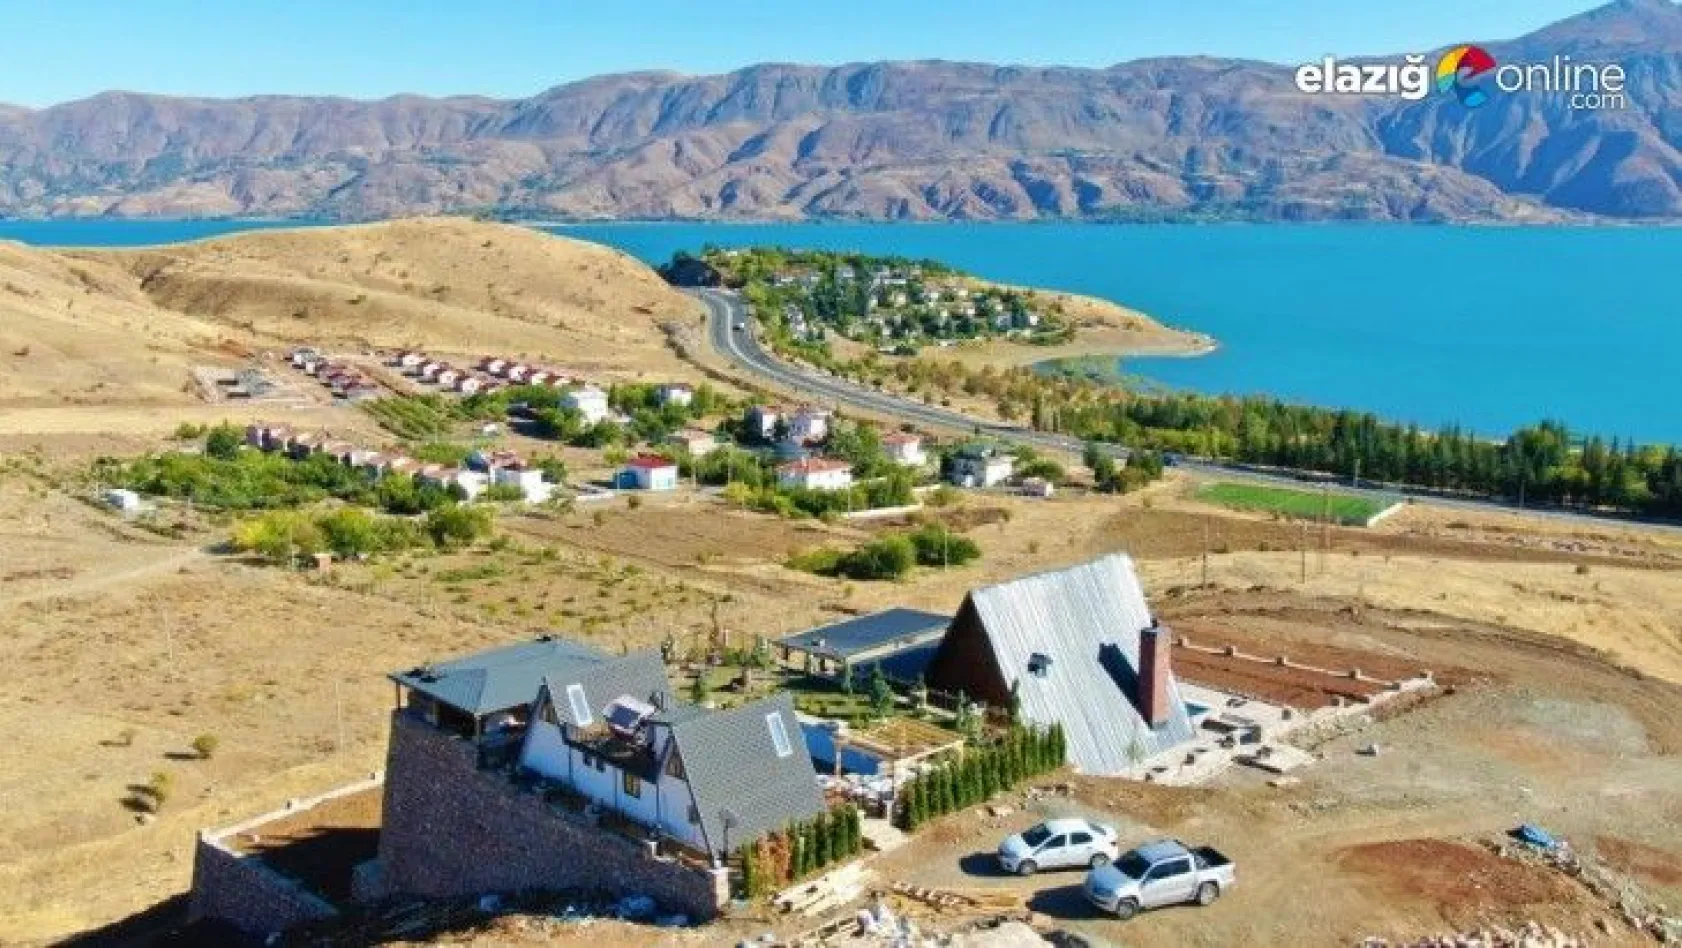 Göl manzaralı bungalov evler Elazığ'ın turizmine katkı sağlayacak